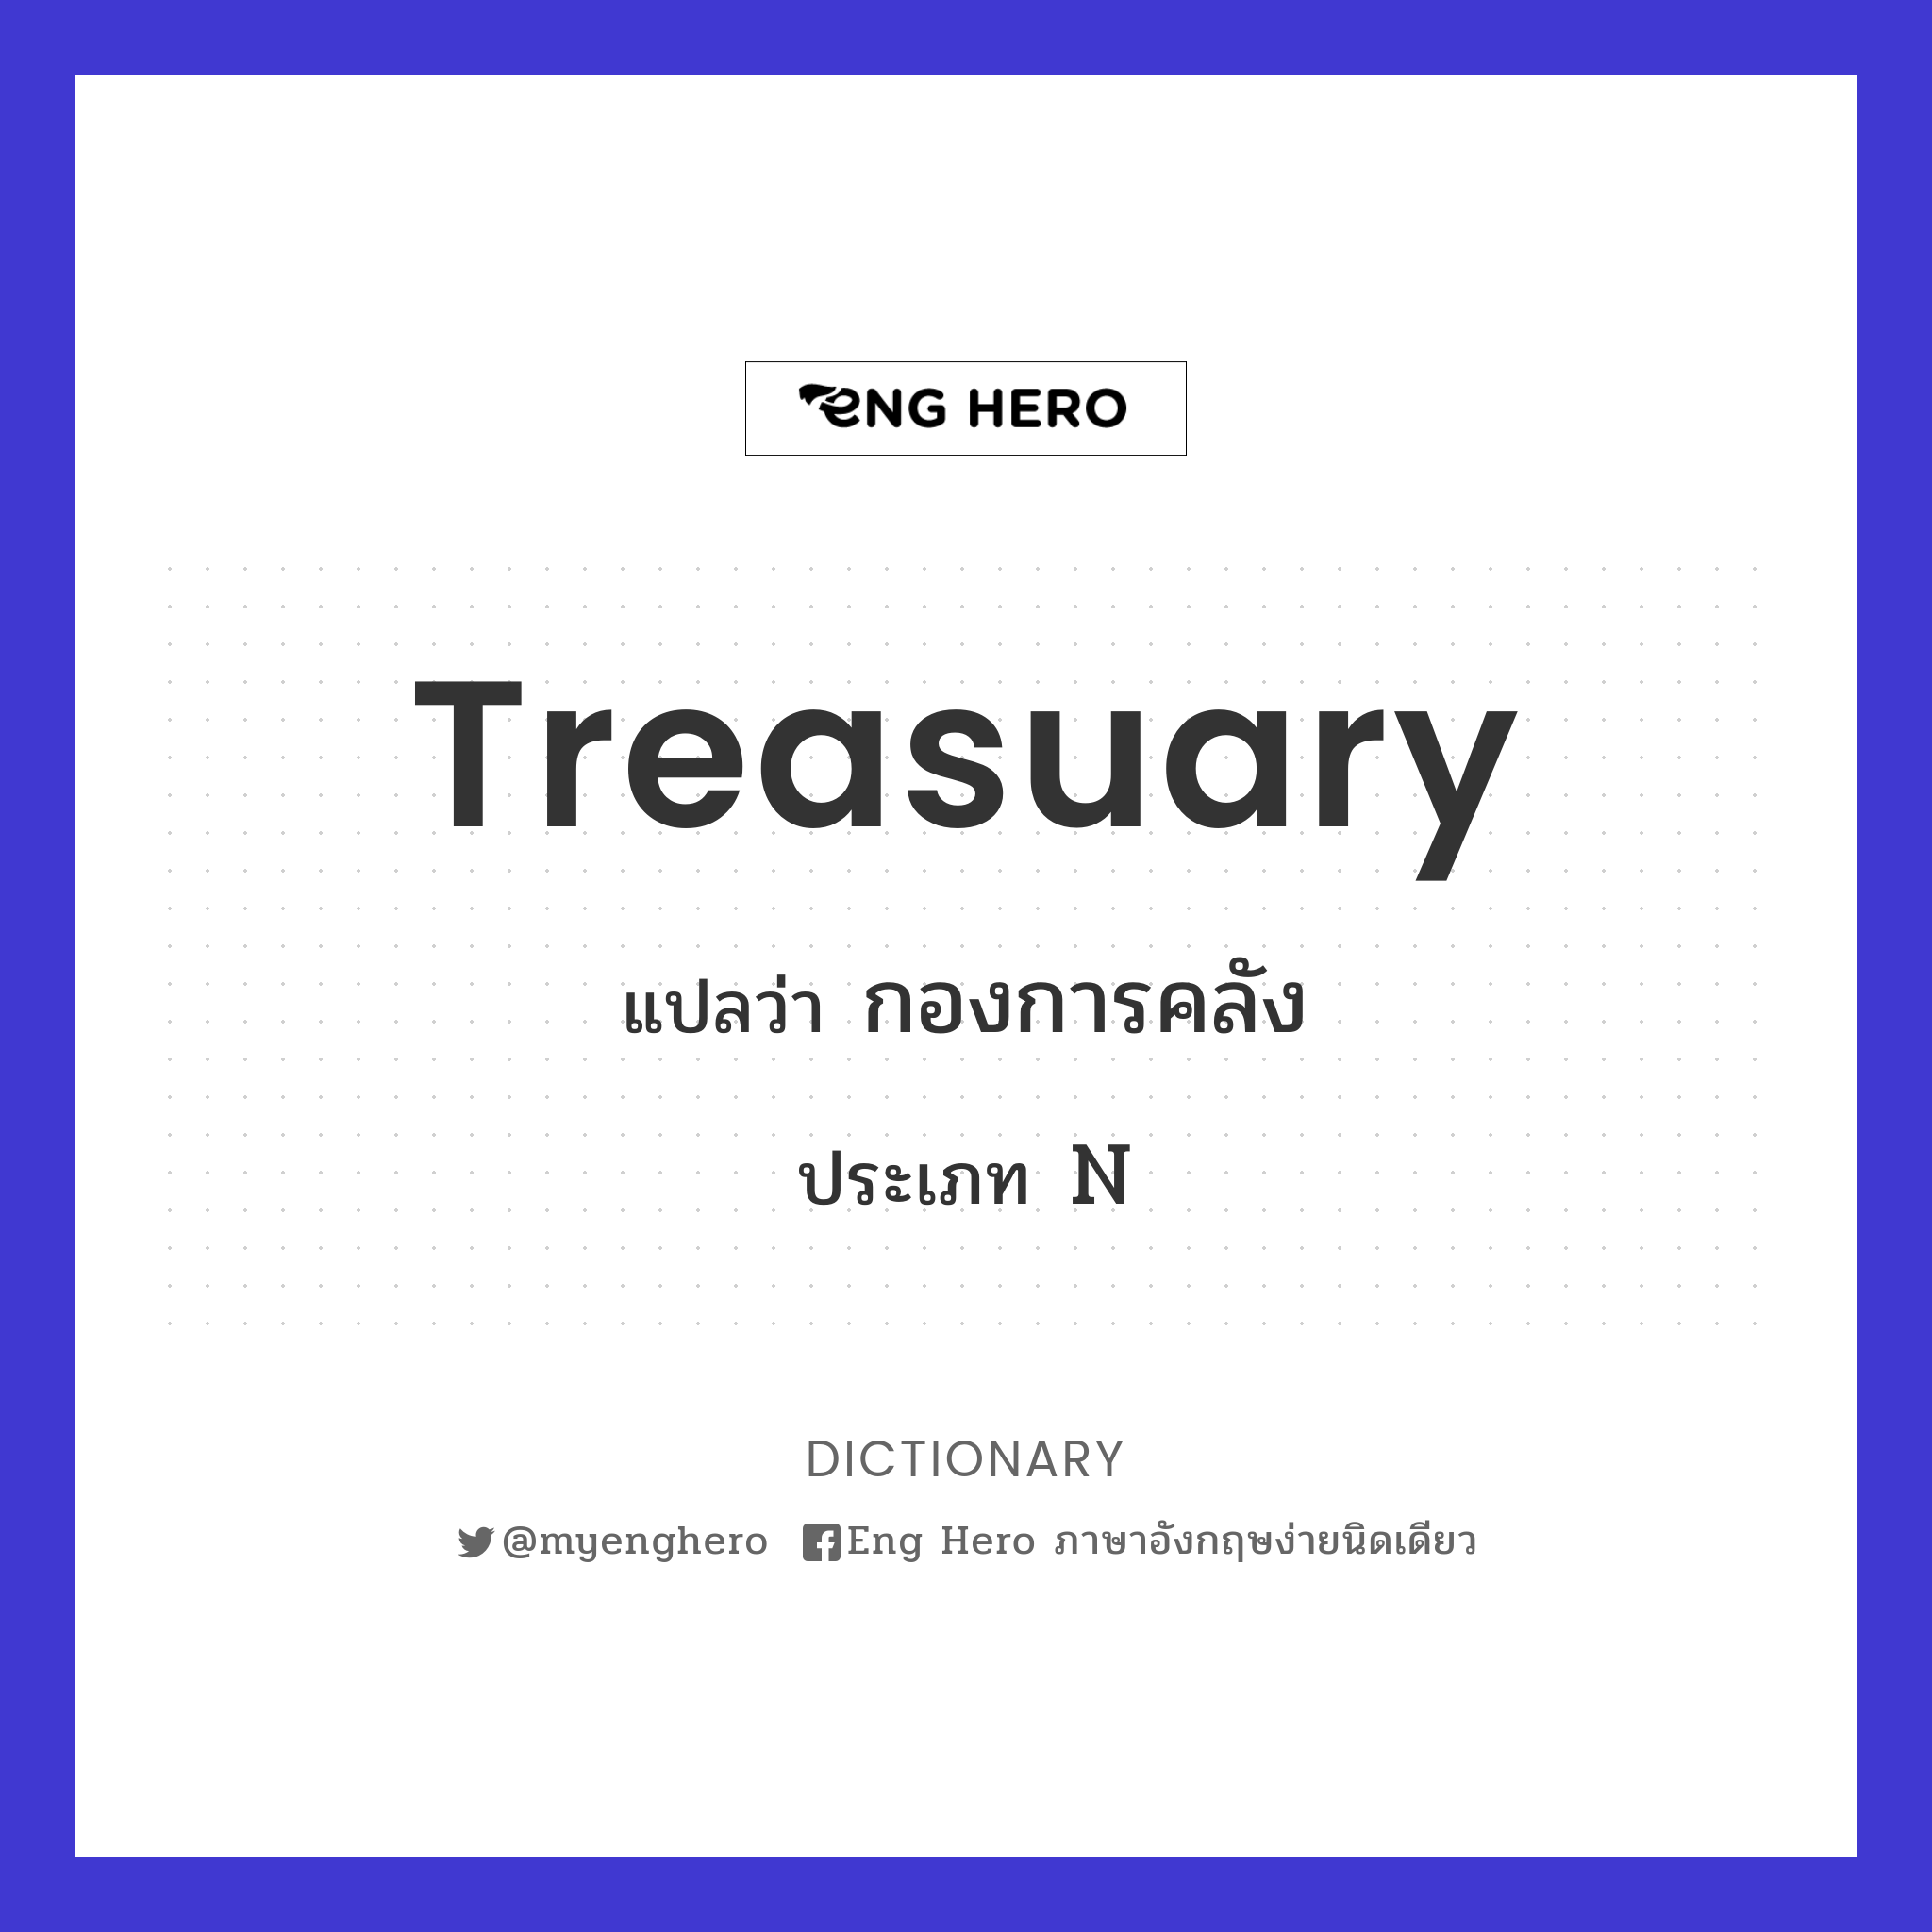 Treasuary